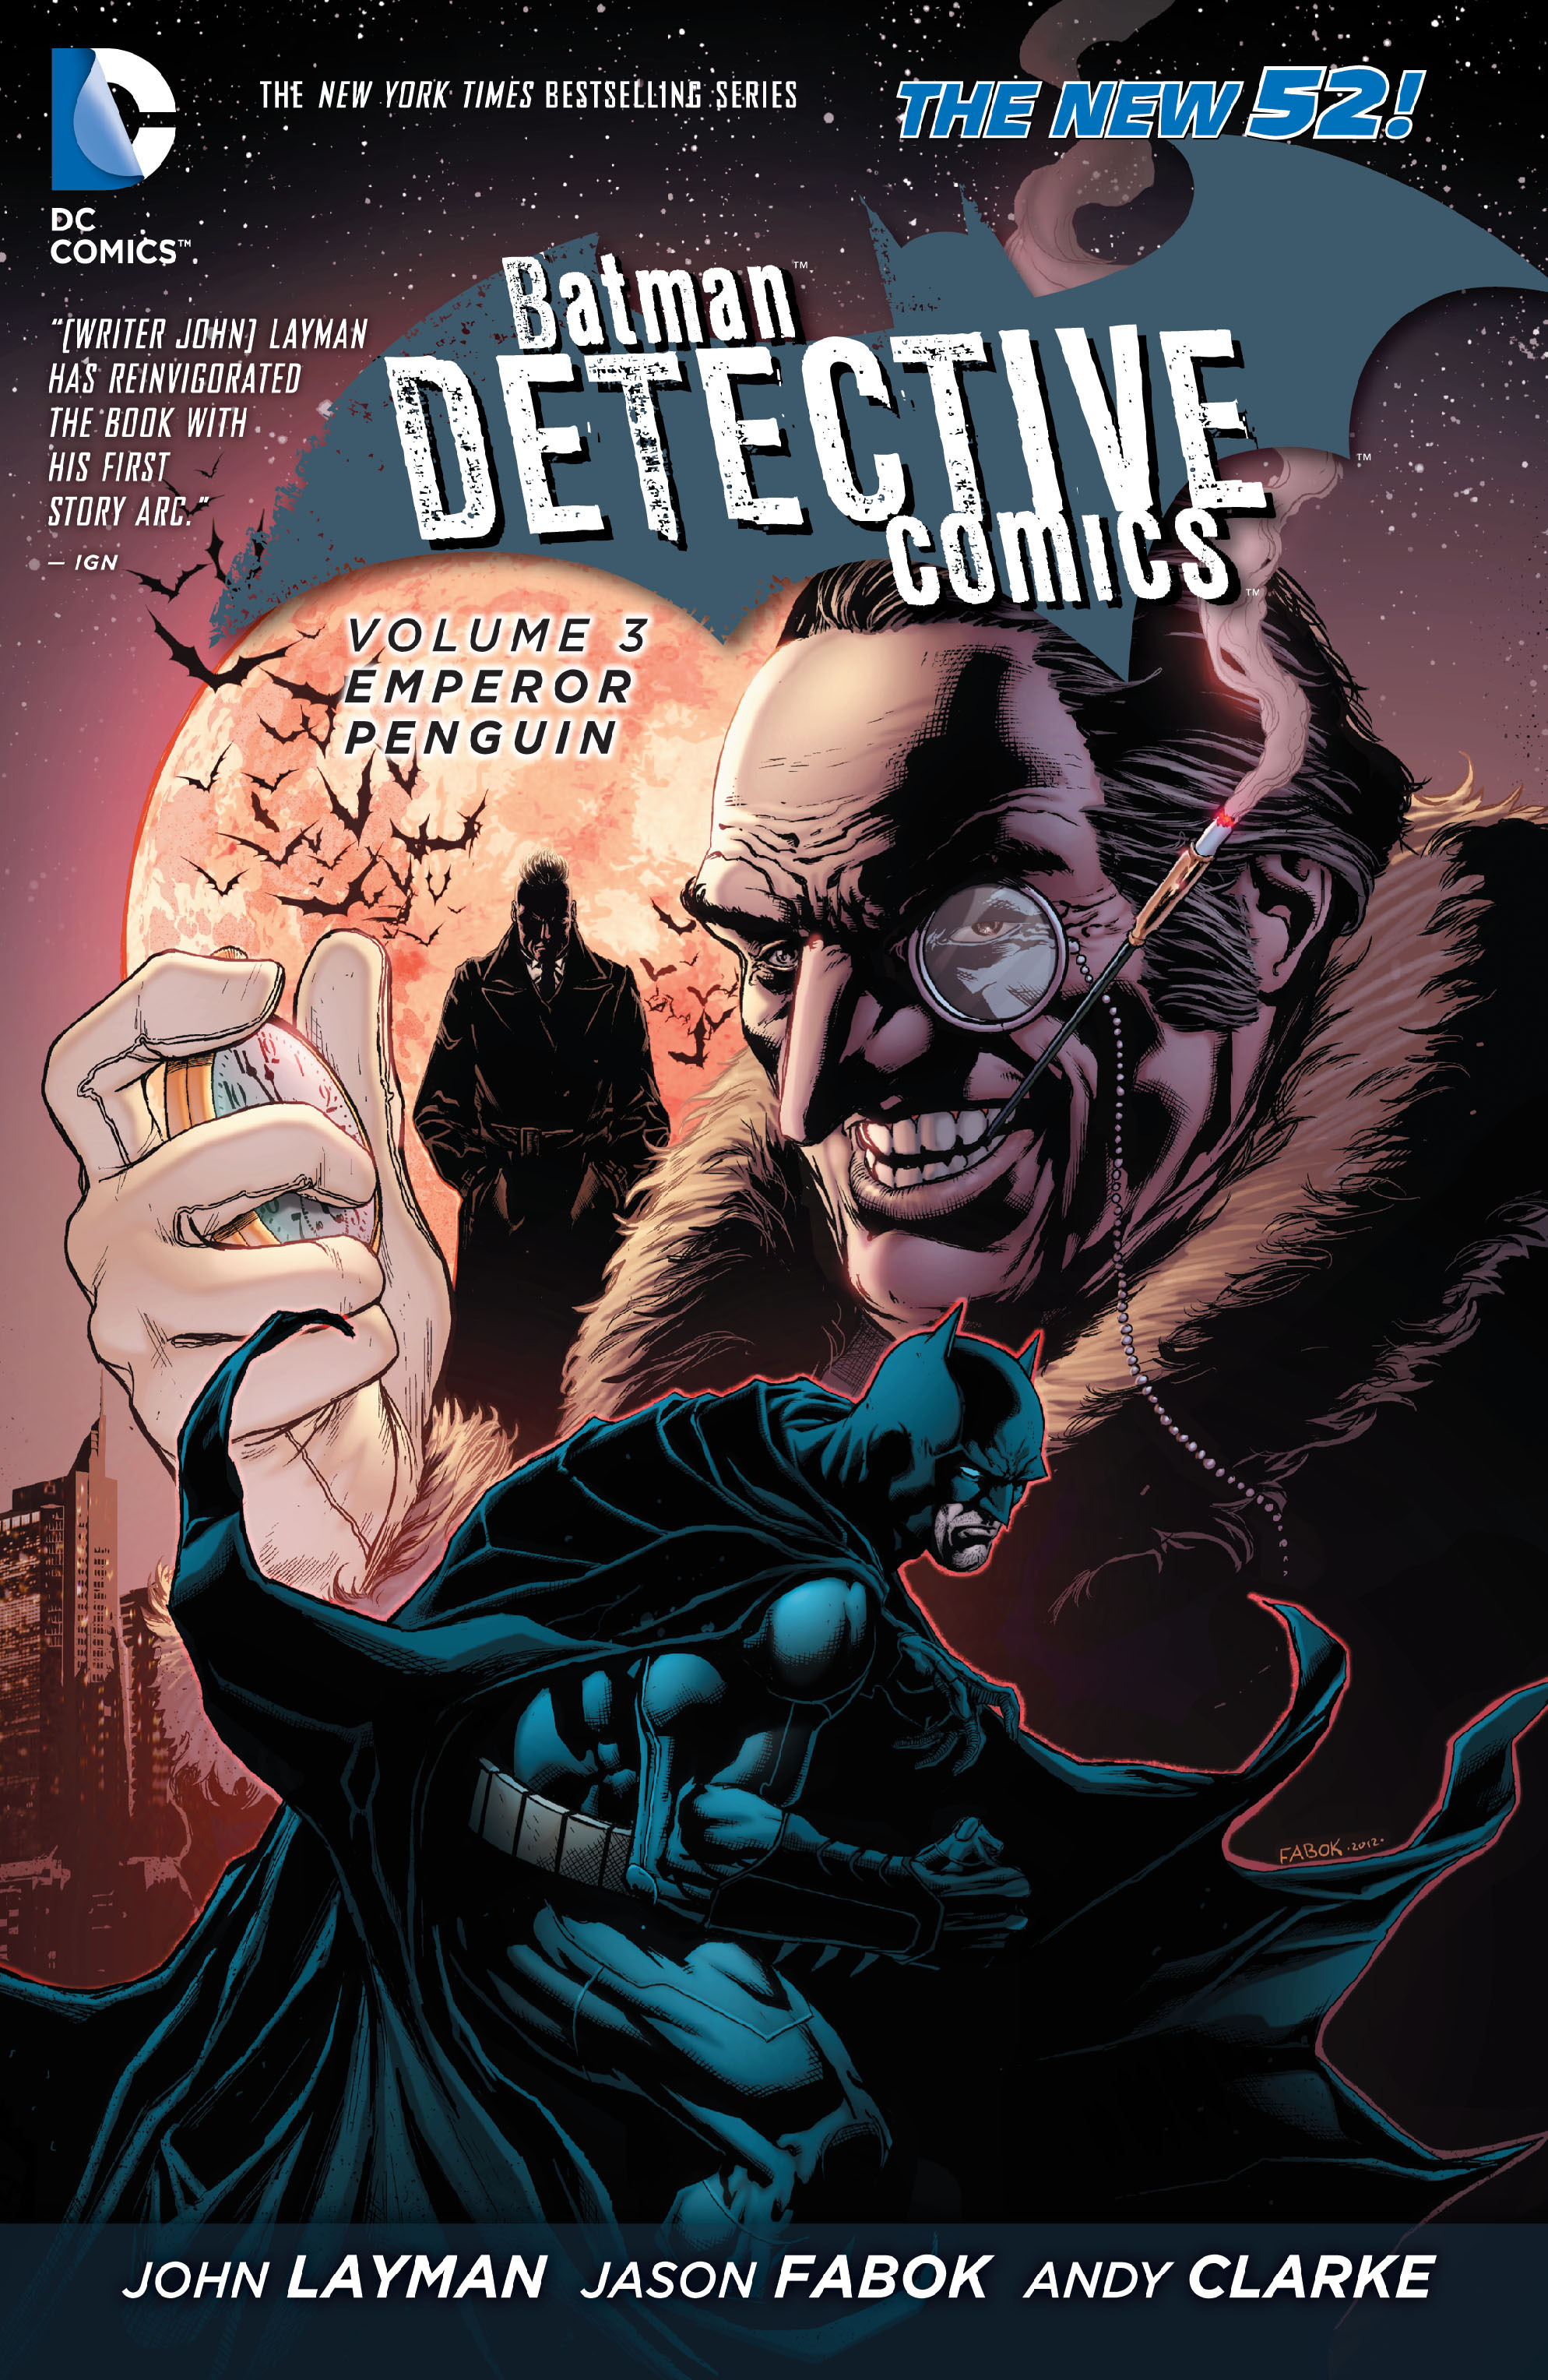 Read online Batman: Detective Comics comic -  Issue # TPB 3 - 1